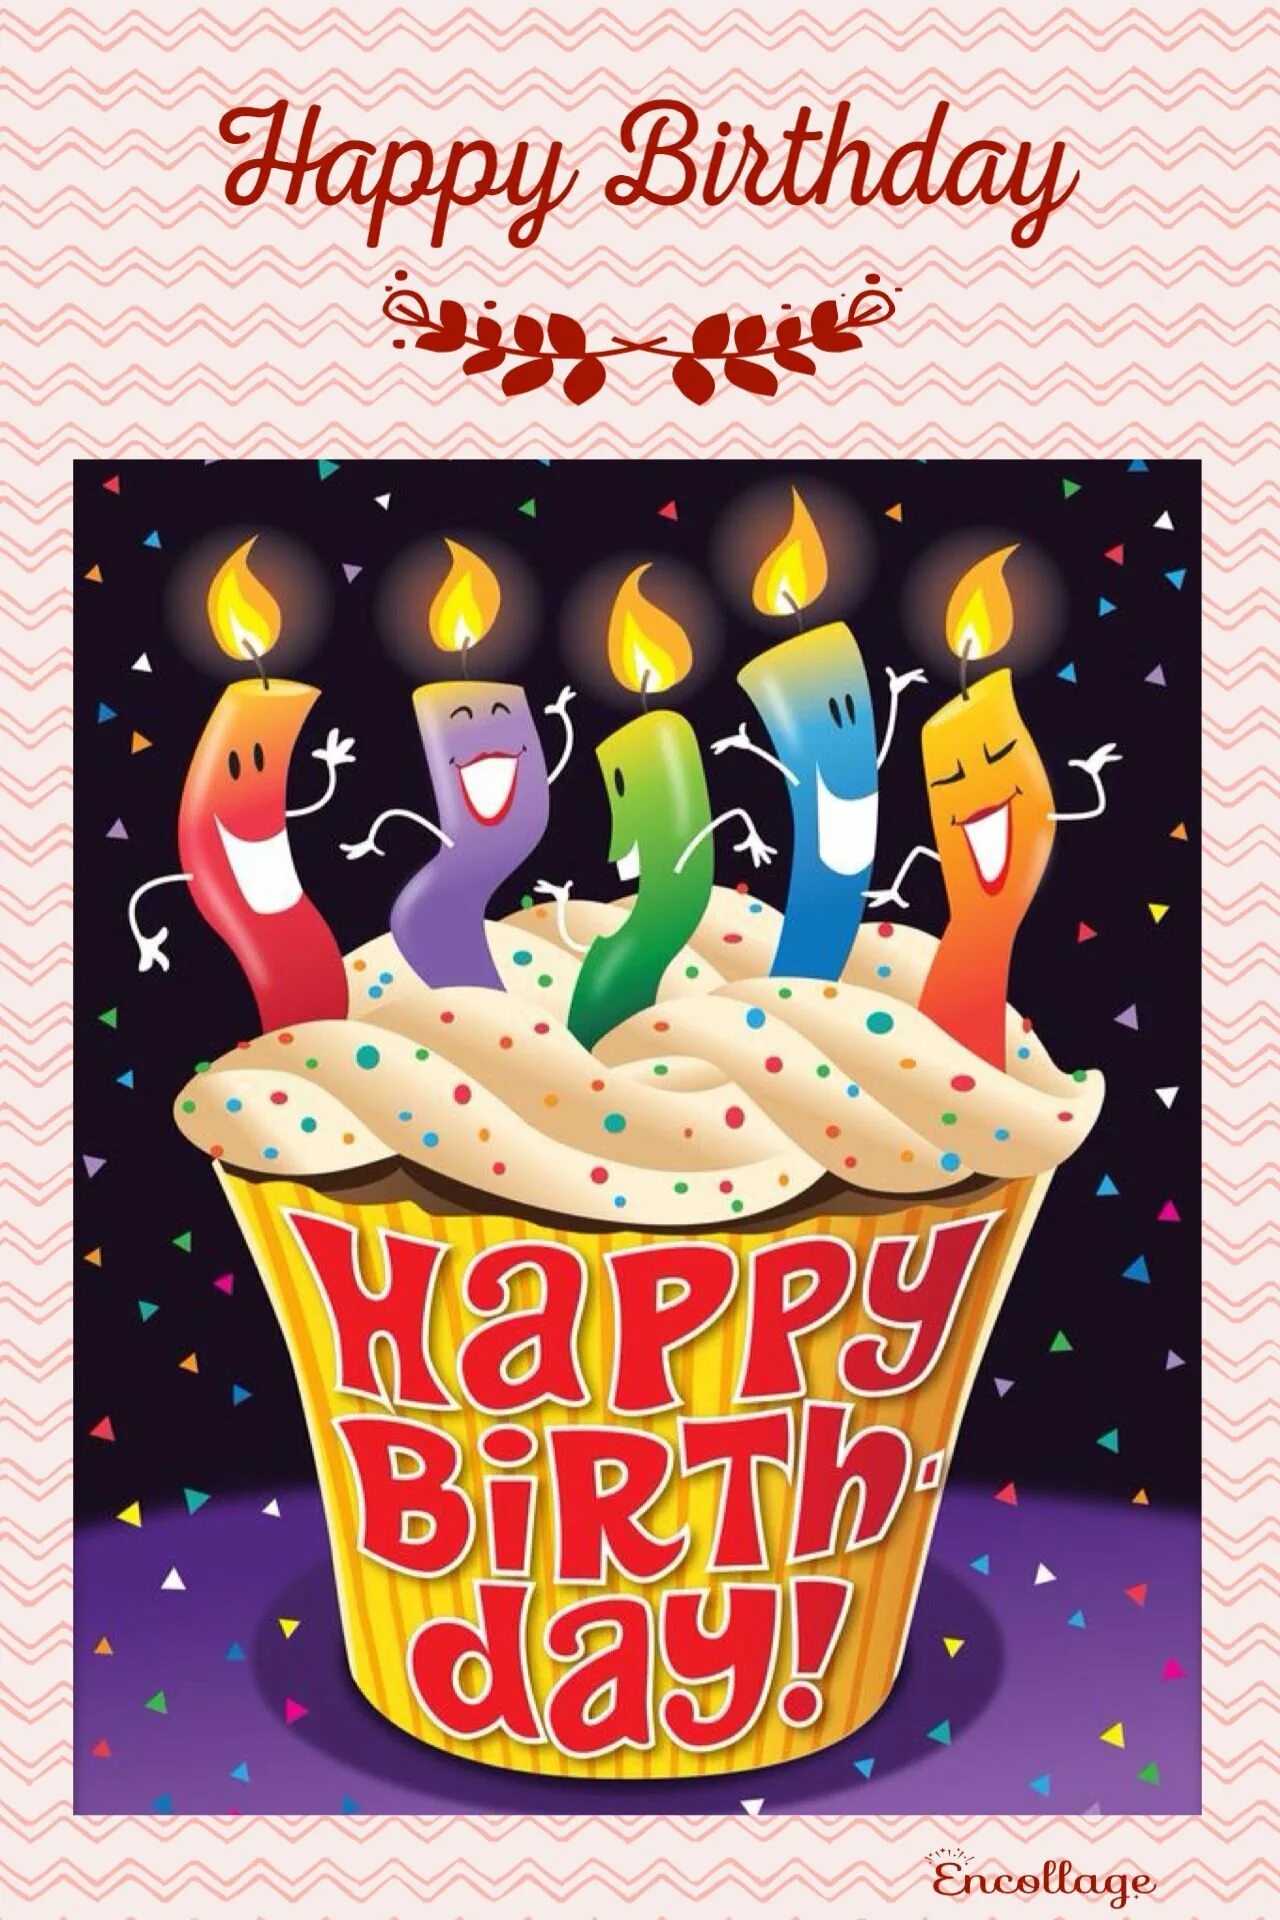 Heppi. С днём рождения оригинальные. Креативные открытки с днем рождения. С днем рождения оригинально. С днем рождения необычные картинки.